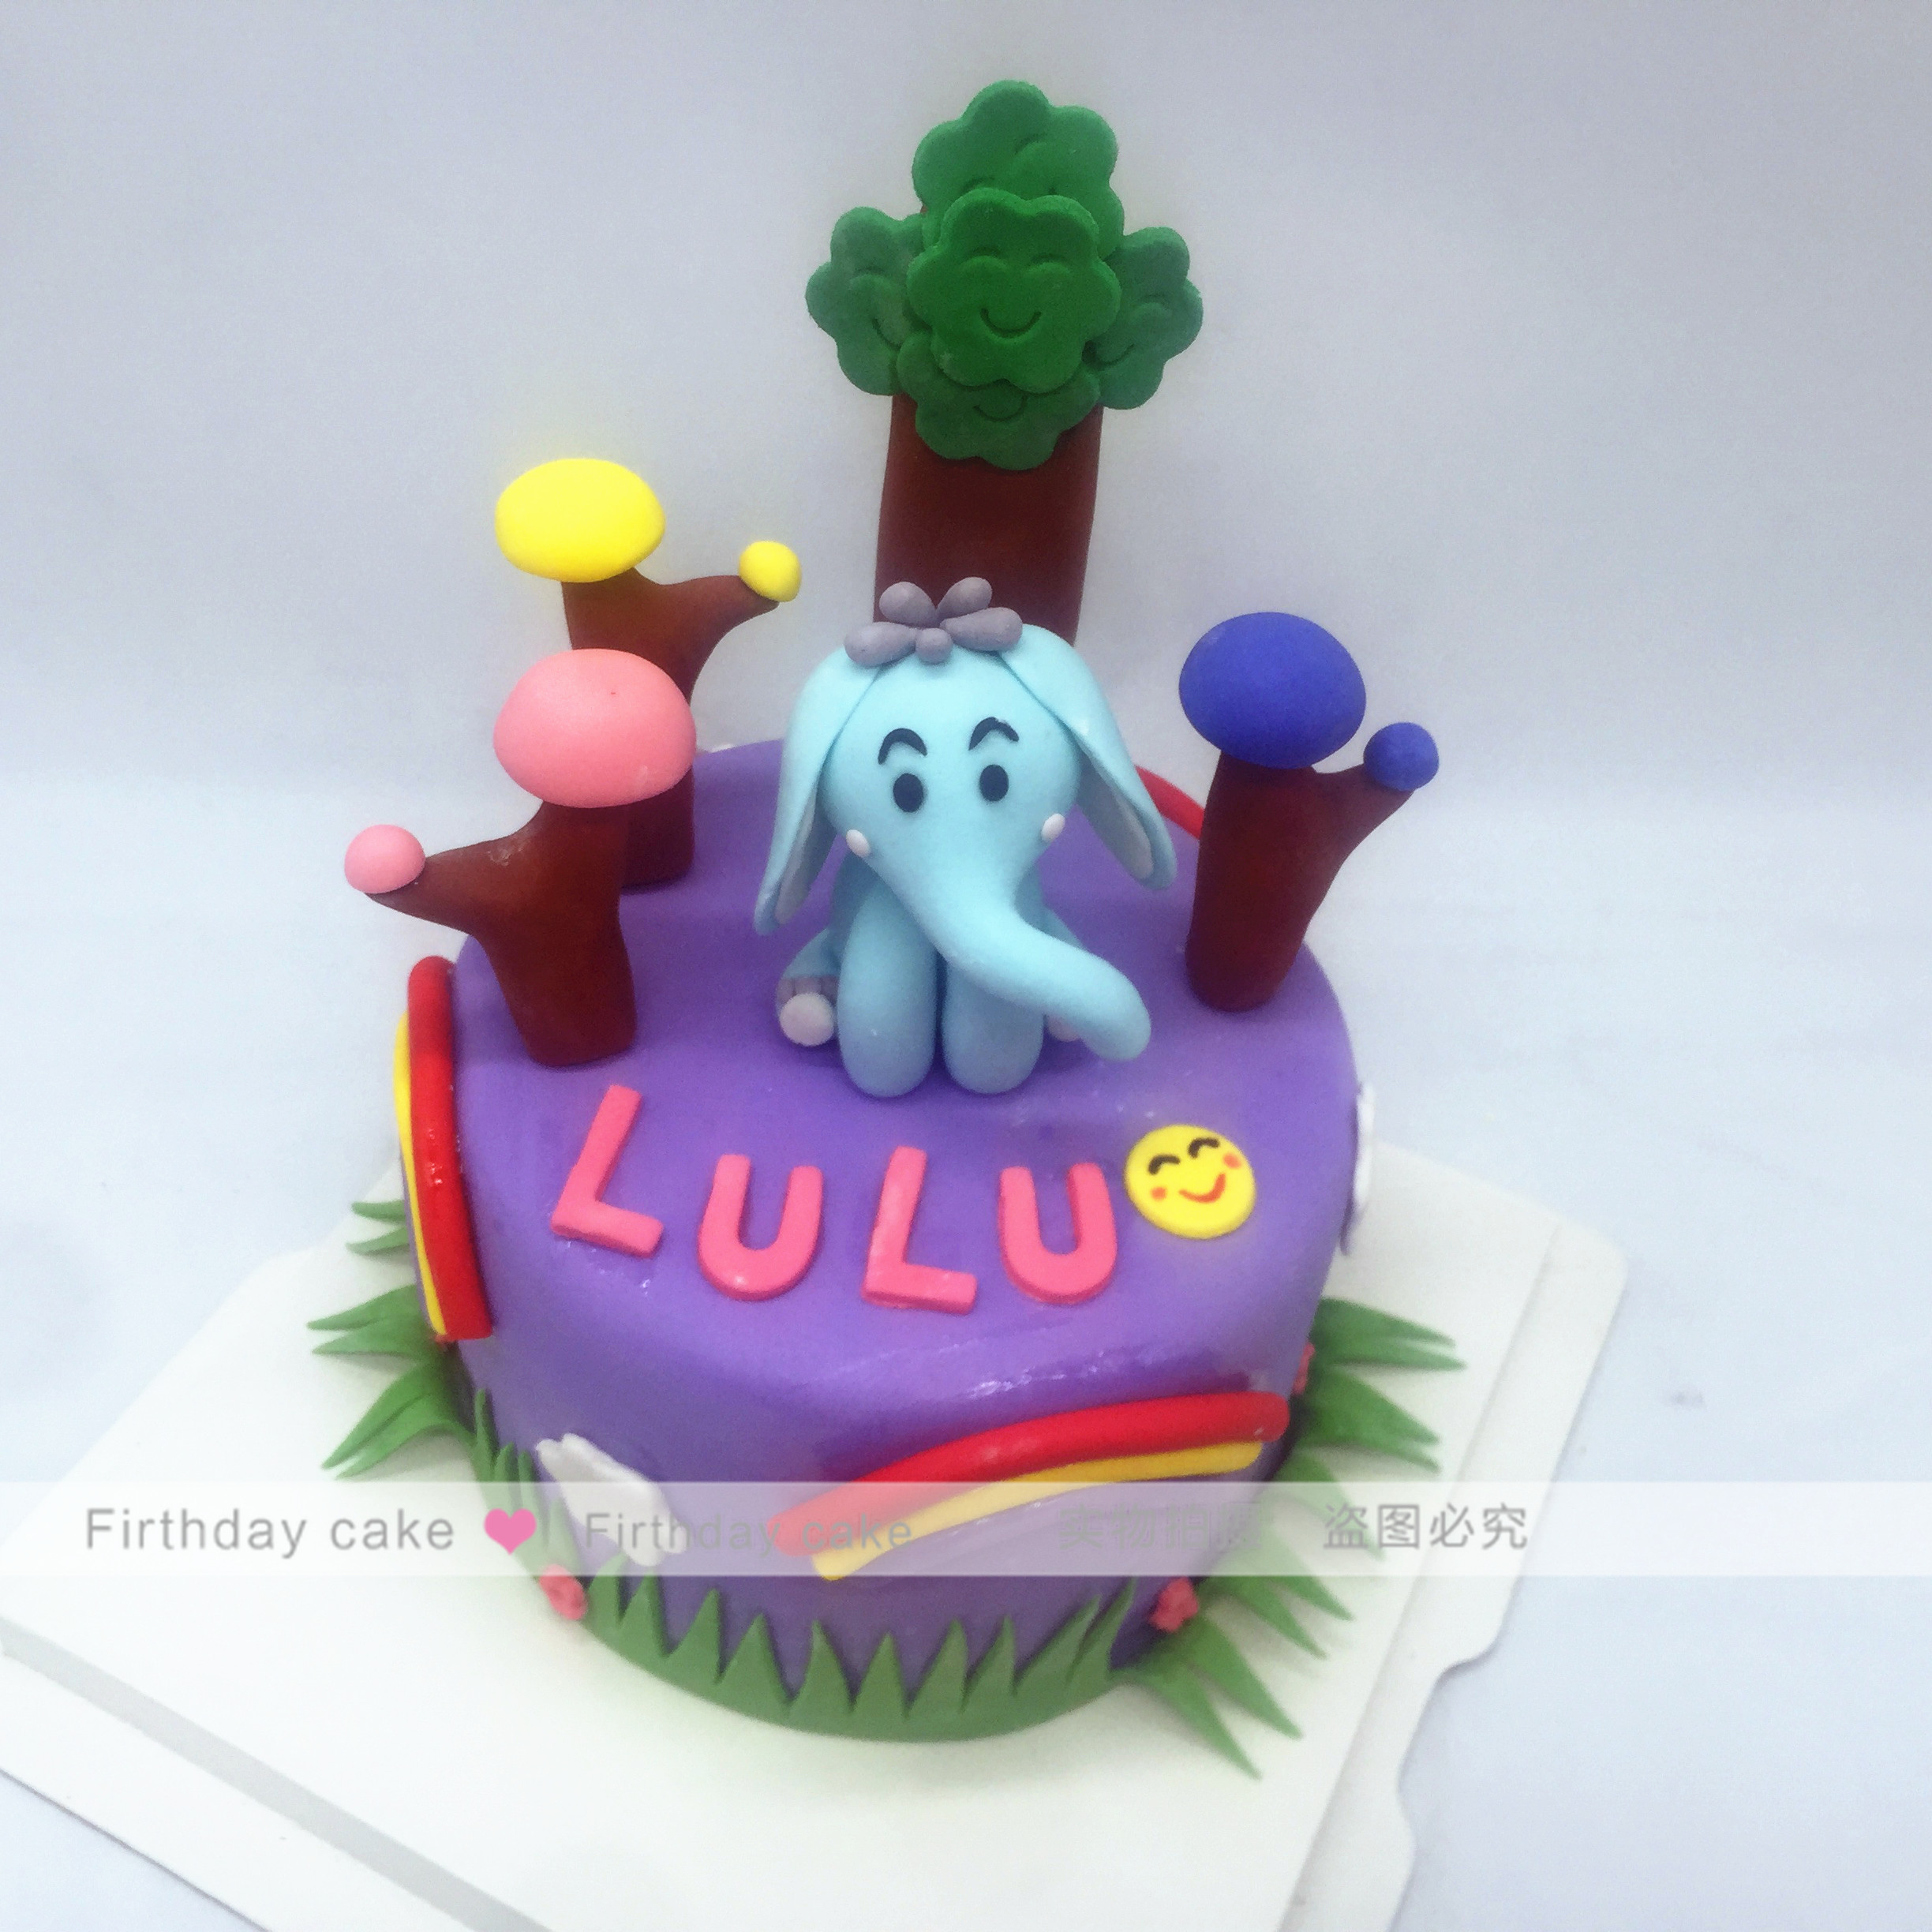 生日蛋糕北京上海杭州同城翻糖蛋糕定制儿童生日蛋糕大象彩虹